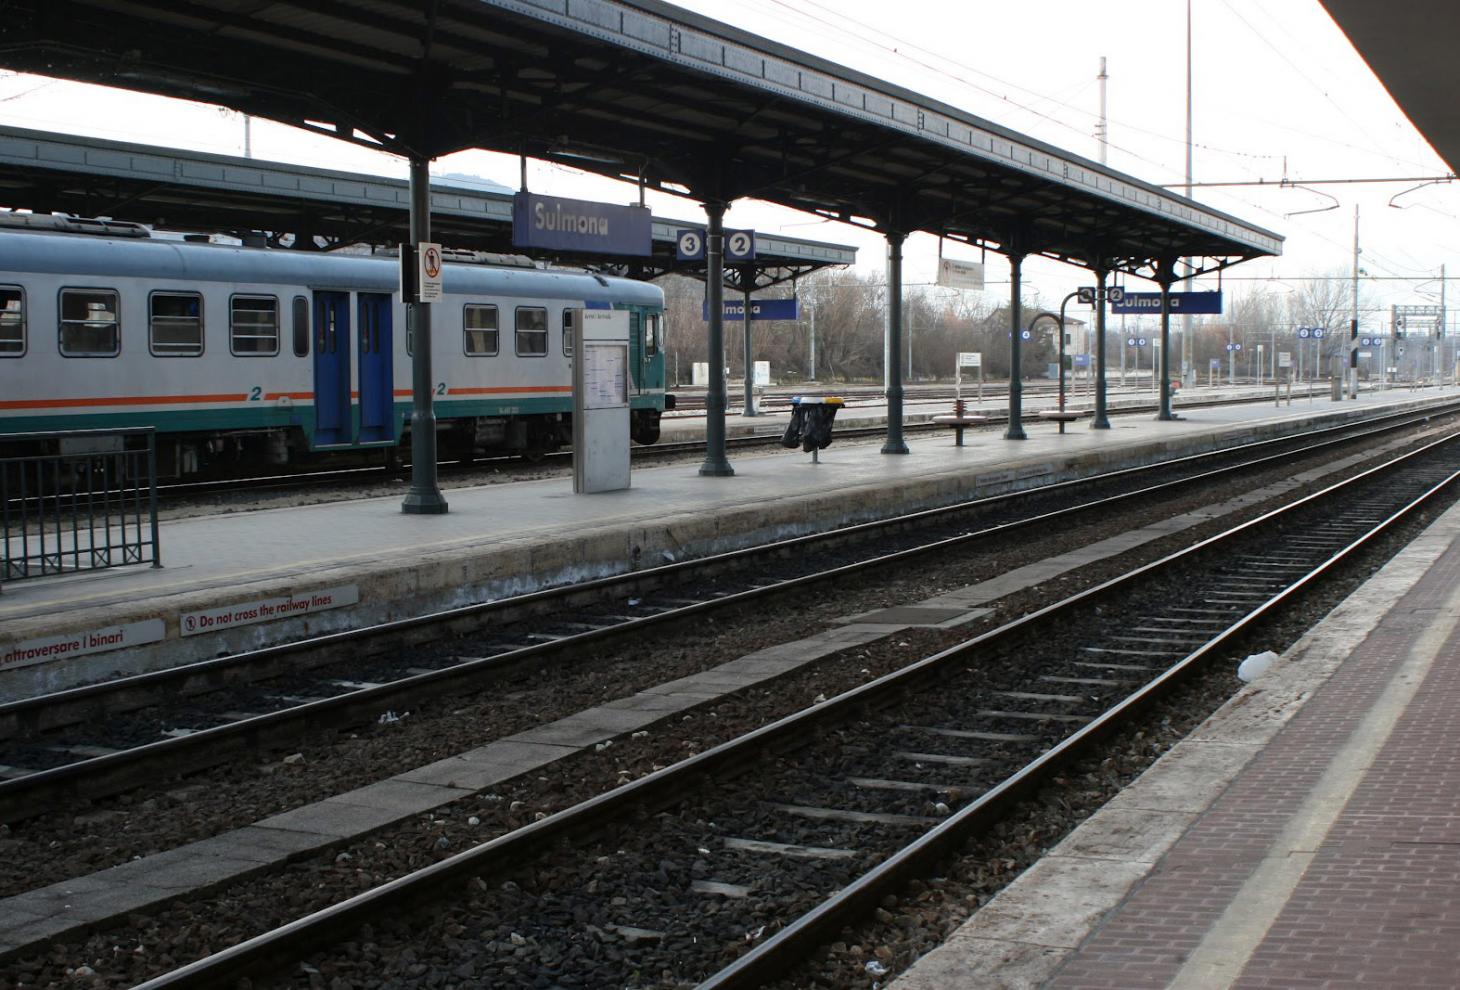 Stazione ferroviaria di Sulmona